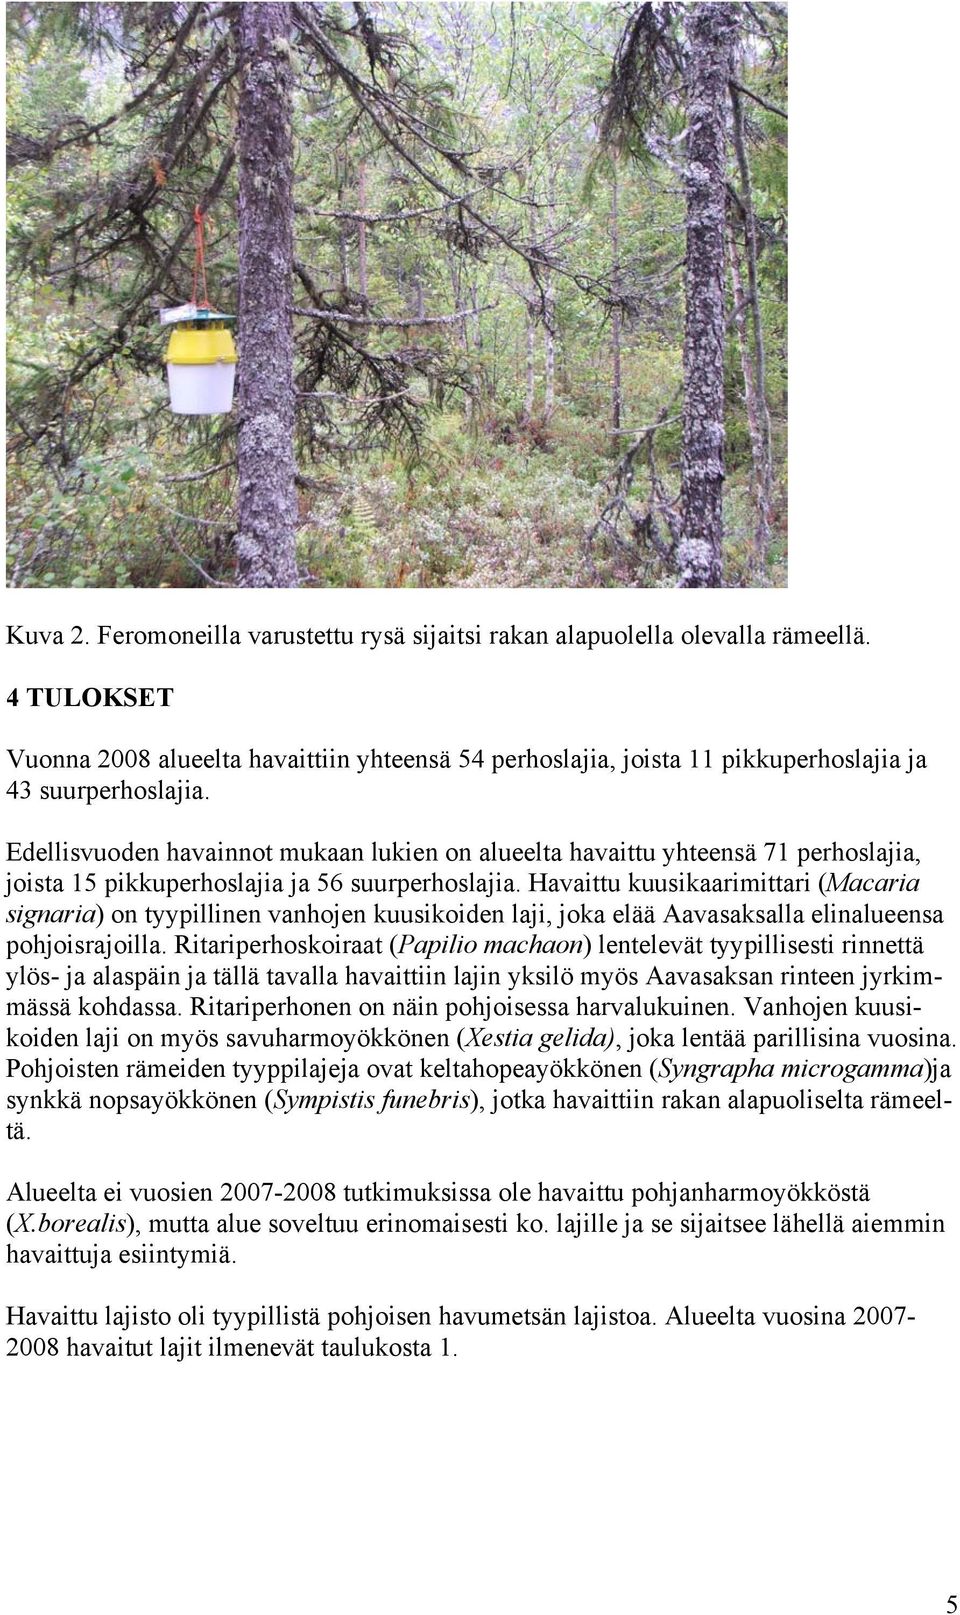 Havaittu kuusikaarimittari (Macaria signaria) on tyypillinen vanhojen kuusikoiden laji, joka elää Aavasaksalla elinalueensa pohjoisrajoilla.